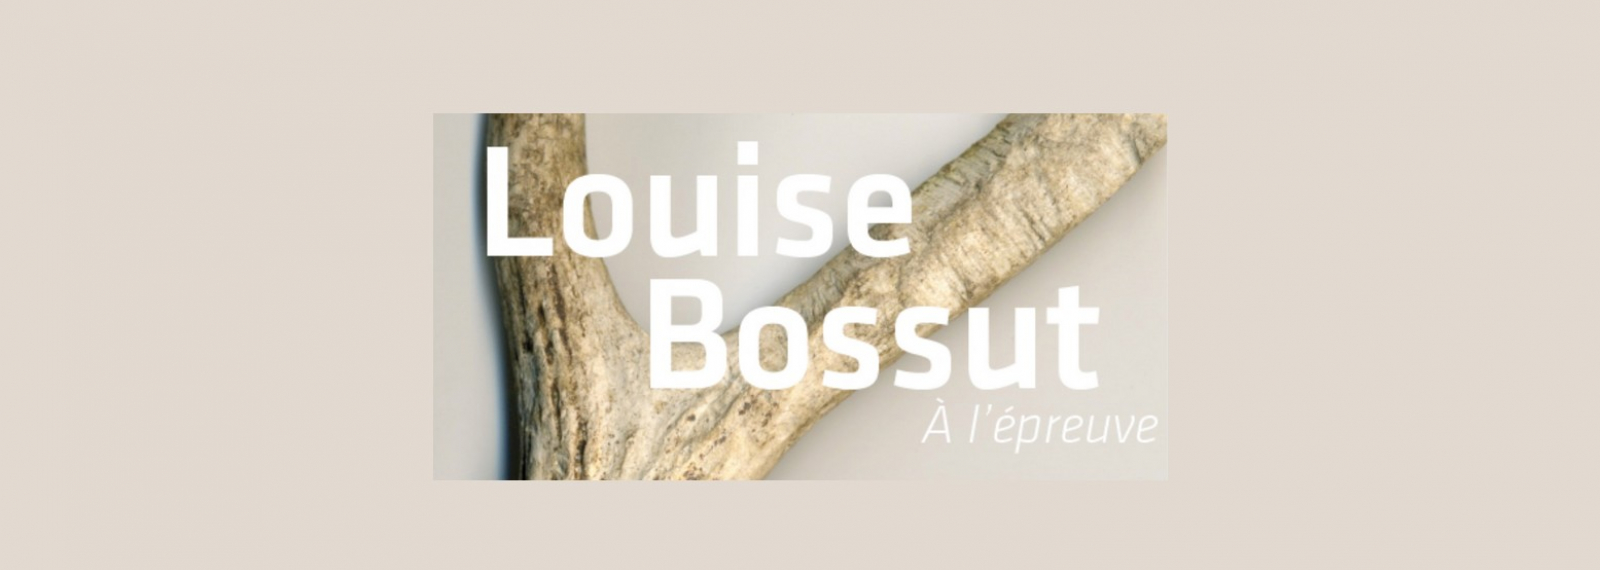 Exposition de Louise Bossut au Musée Estrine à Saint-Rémy-de-Provence dans le cadre des Rencontres de la Photographies à Arles